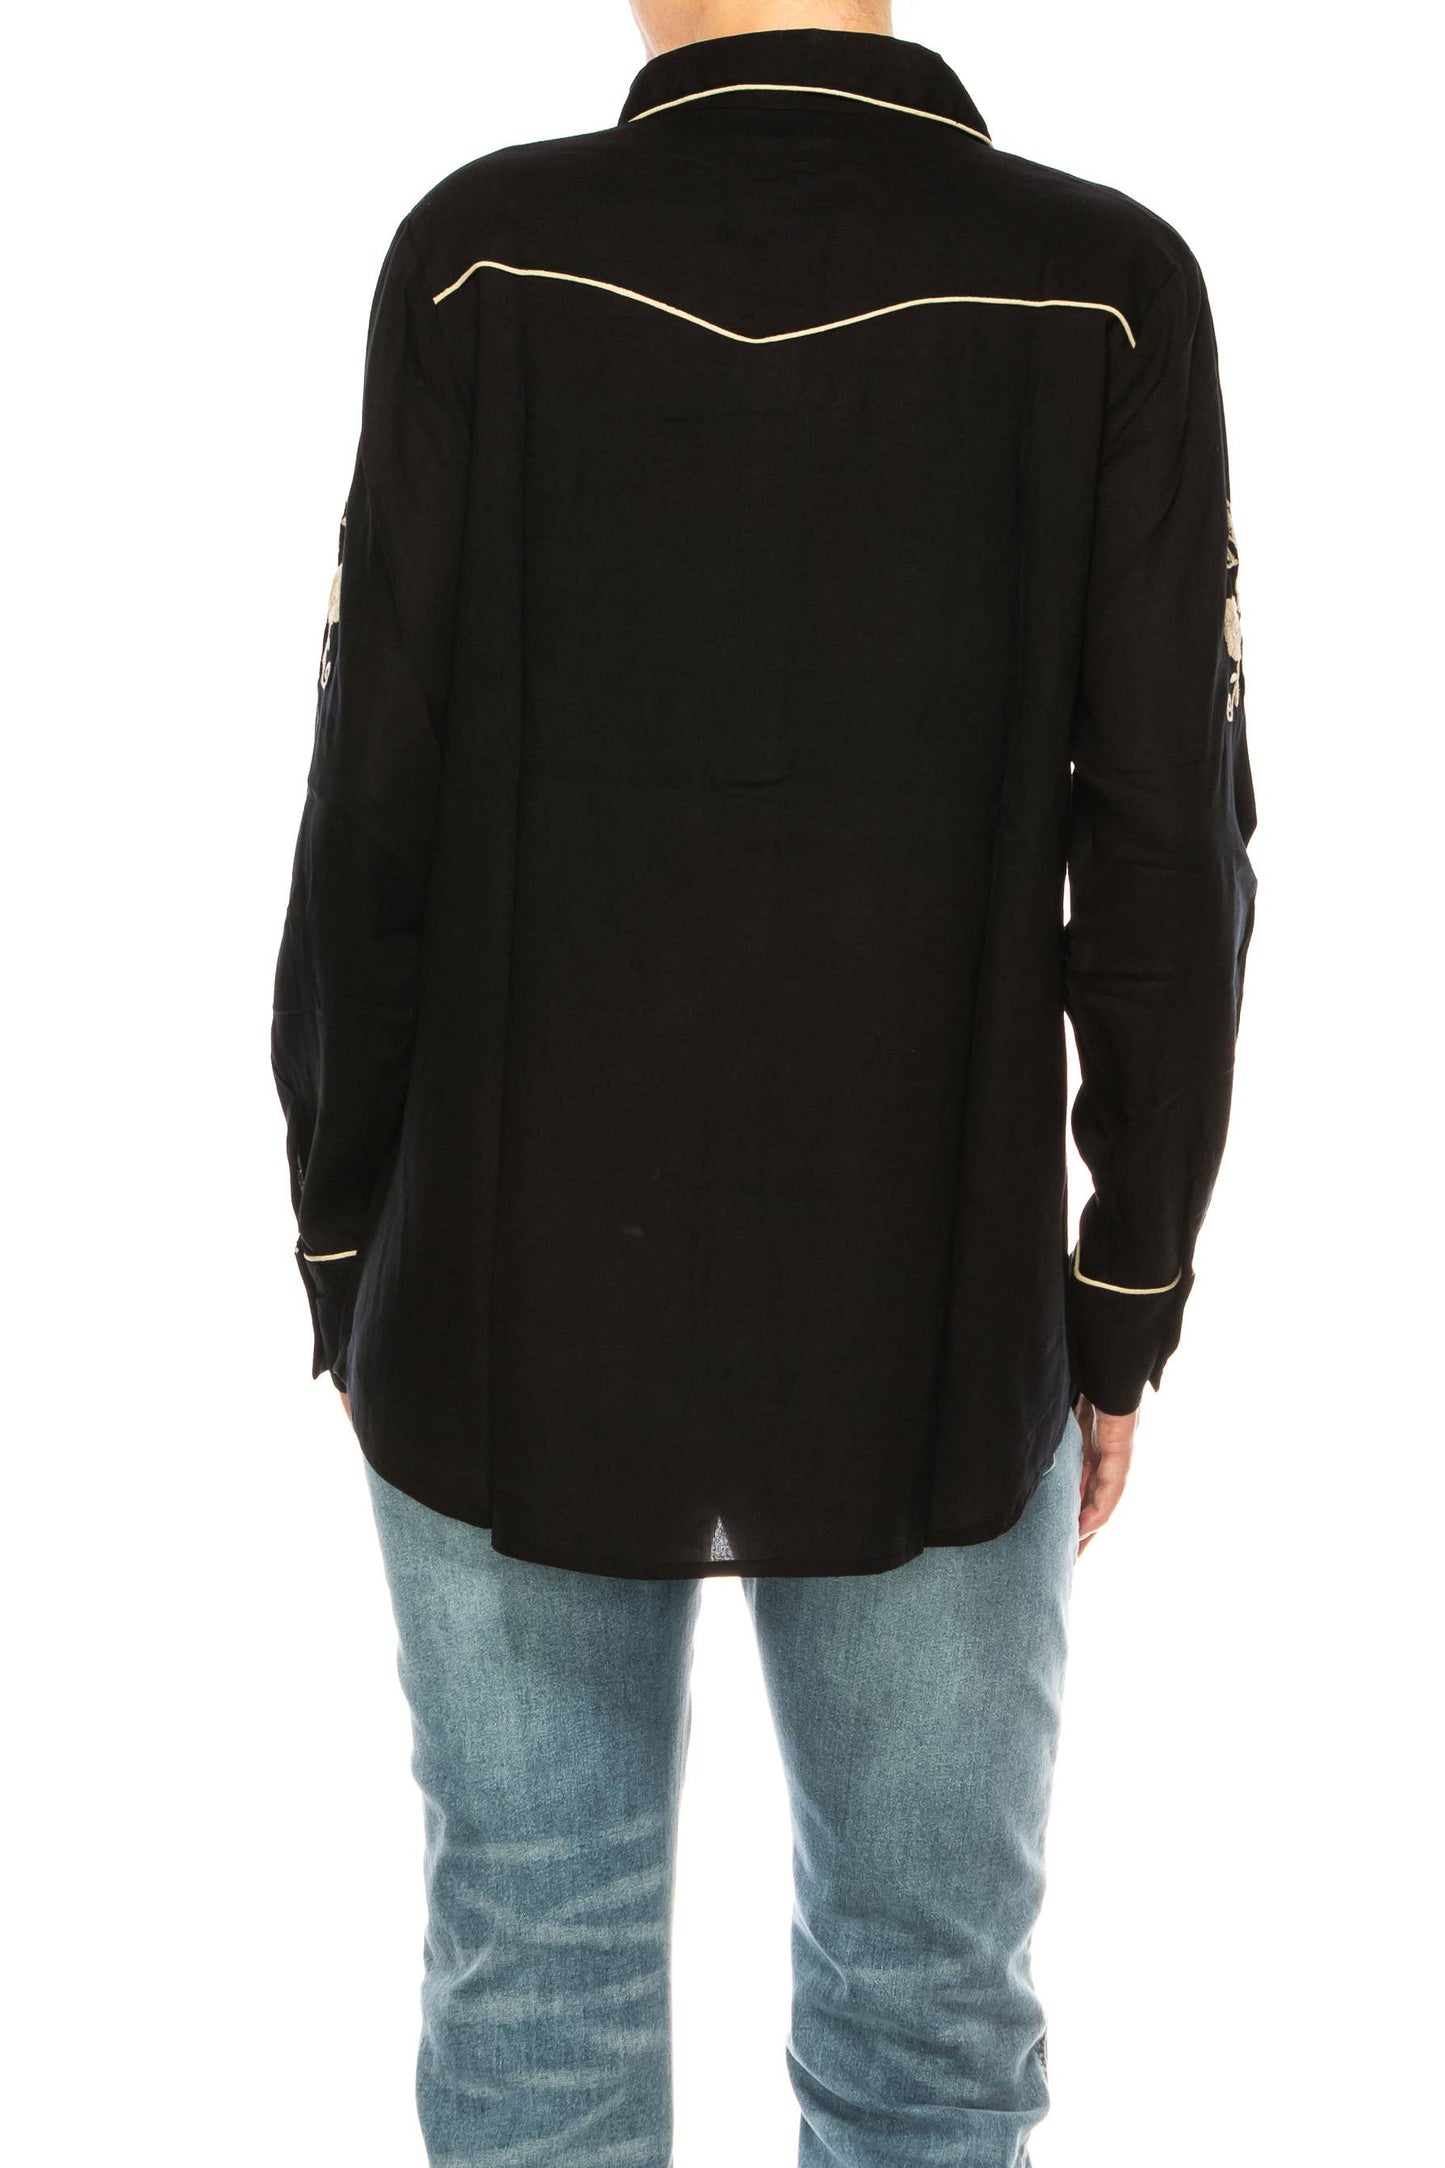 Magazine Clothing - Black Western Shirt with Embroidery: Medium